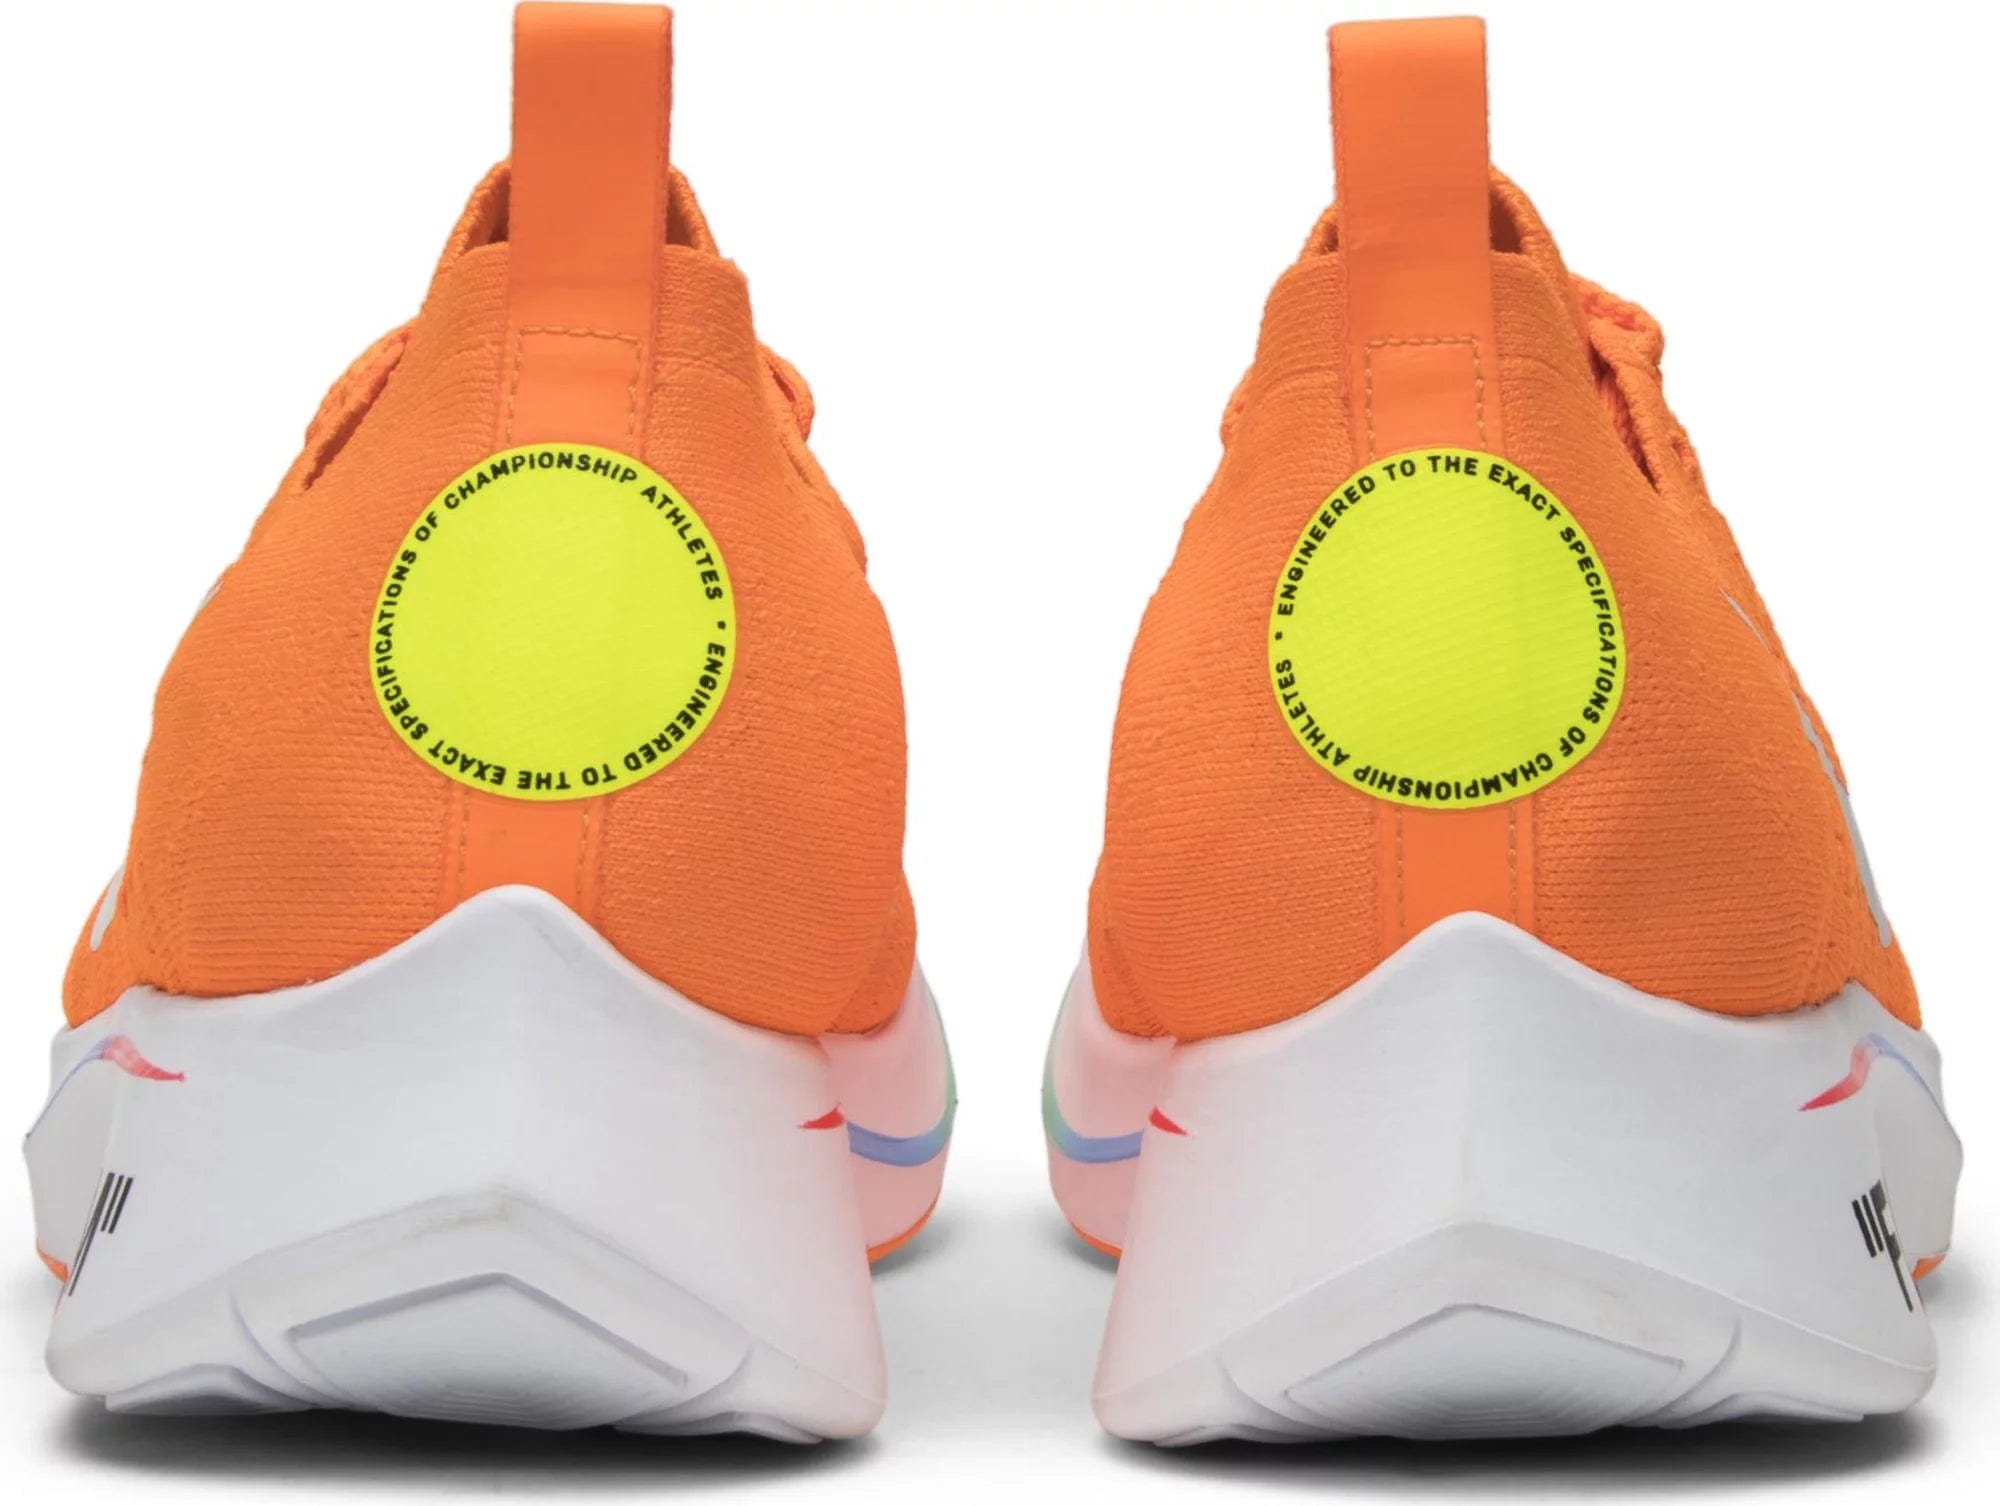 sneakers Nike Zoom Fly Mercurial Off-White Total Orange Men's